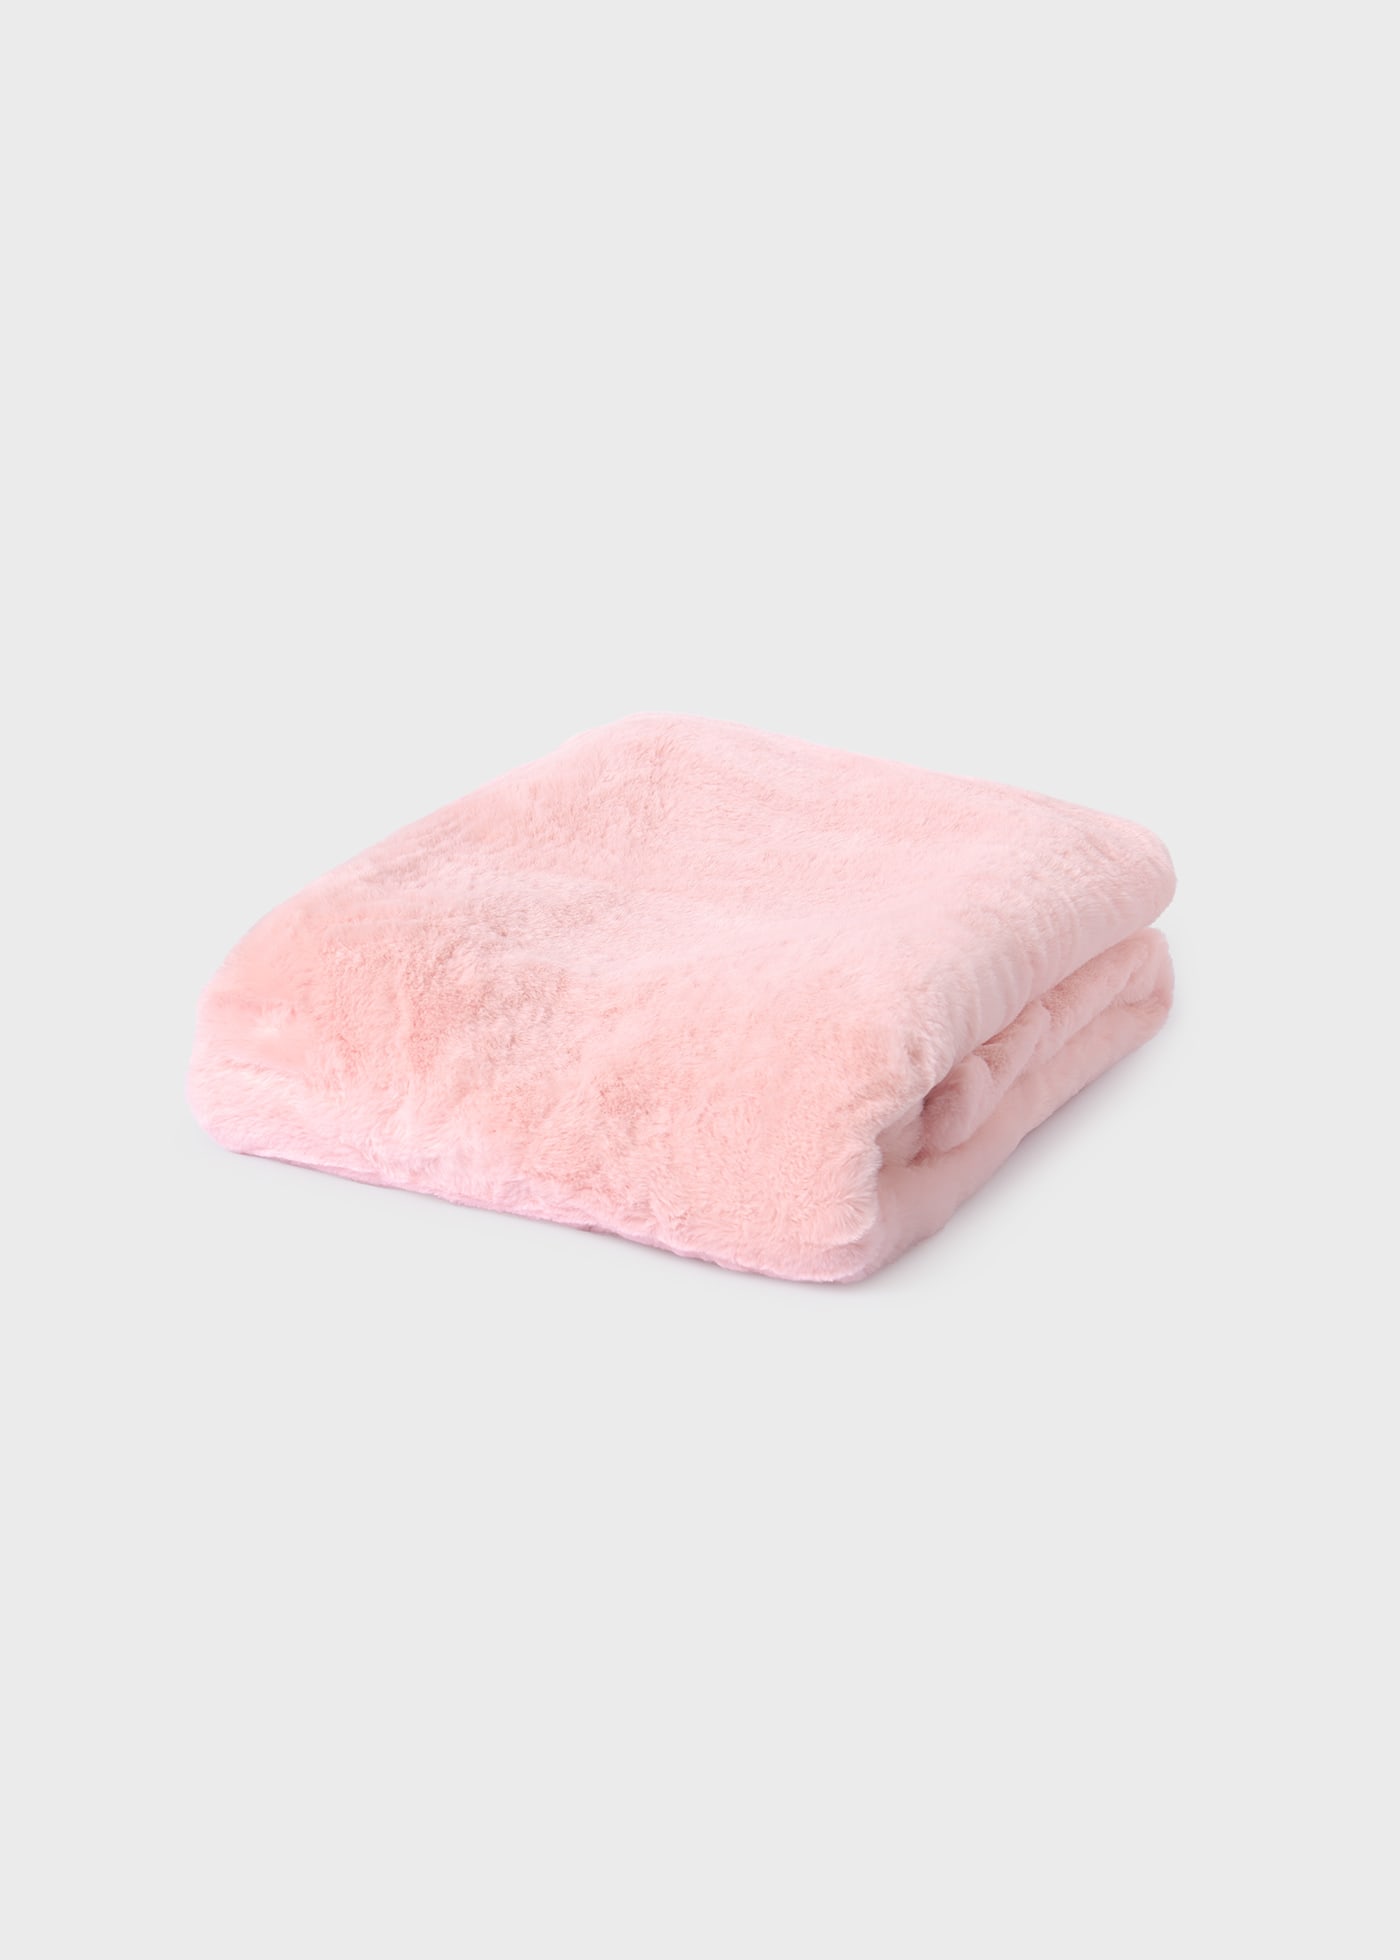 Baby pompom blanket